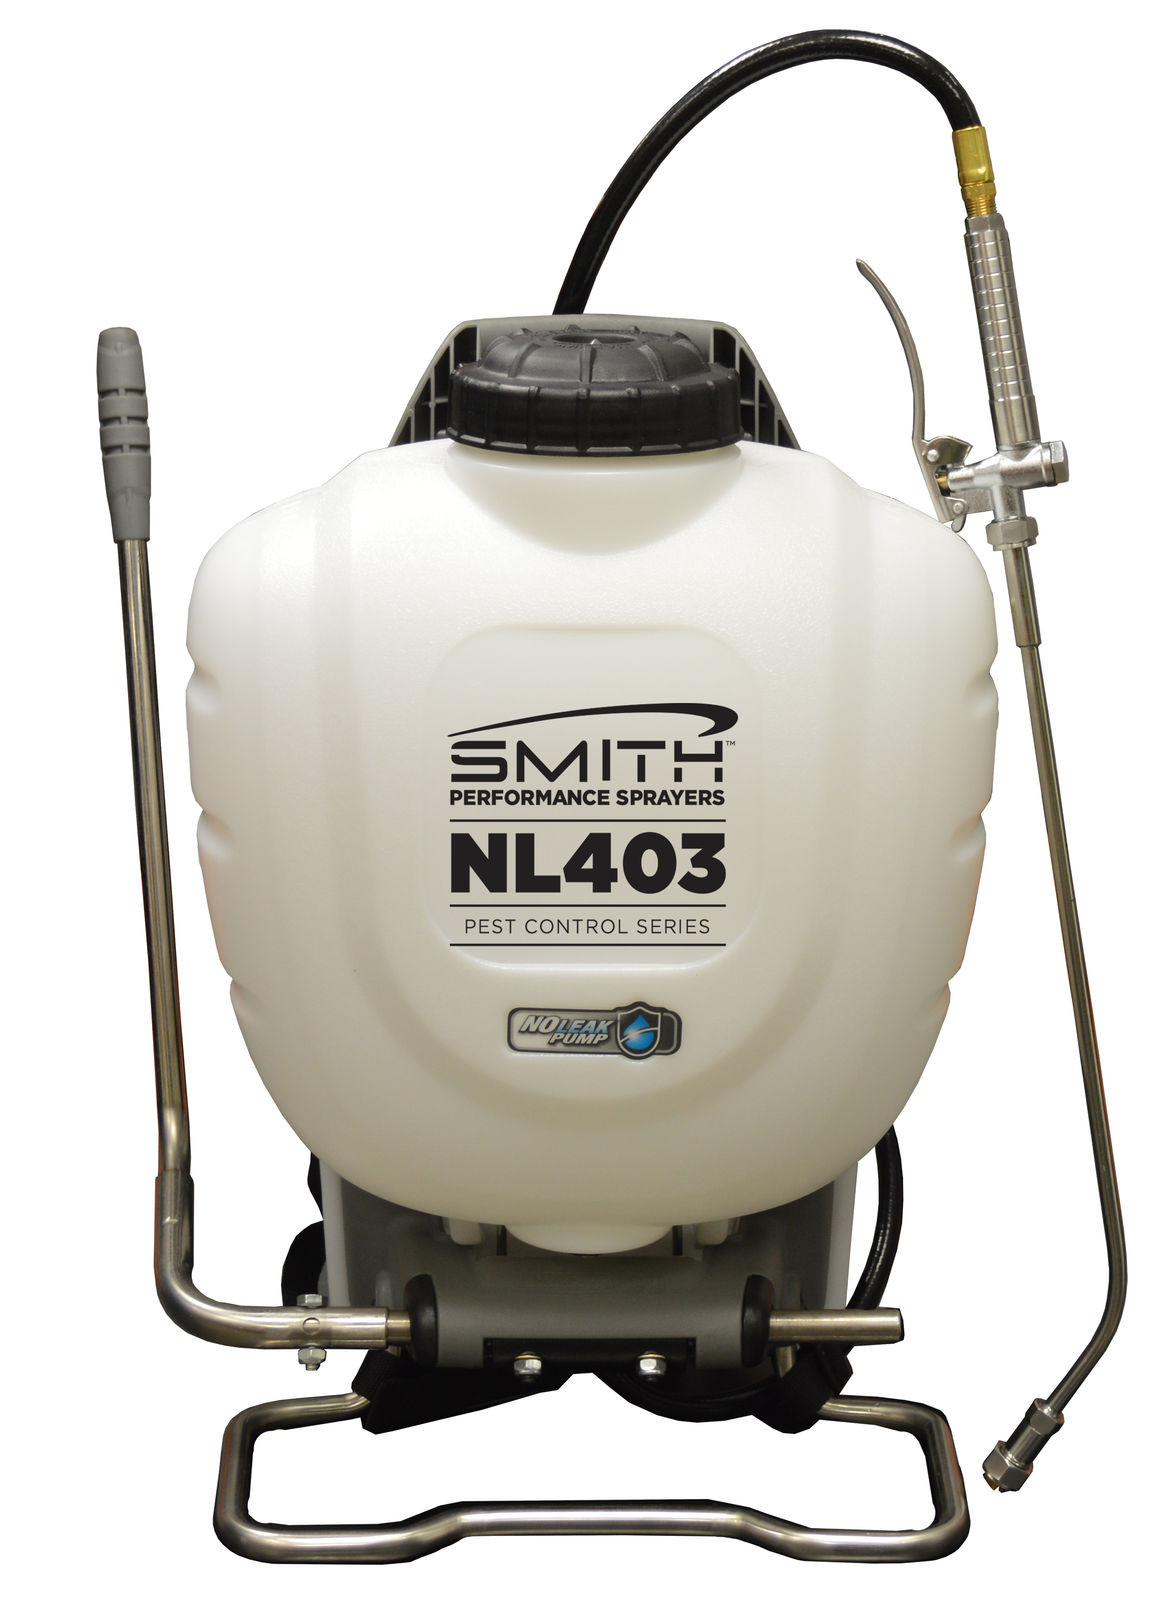 Smith Performance™ NL403 Leak Backpack Sprayer for Pest Control, Model 190442